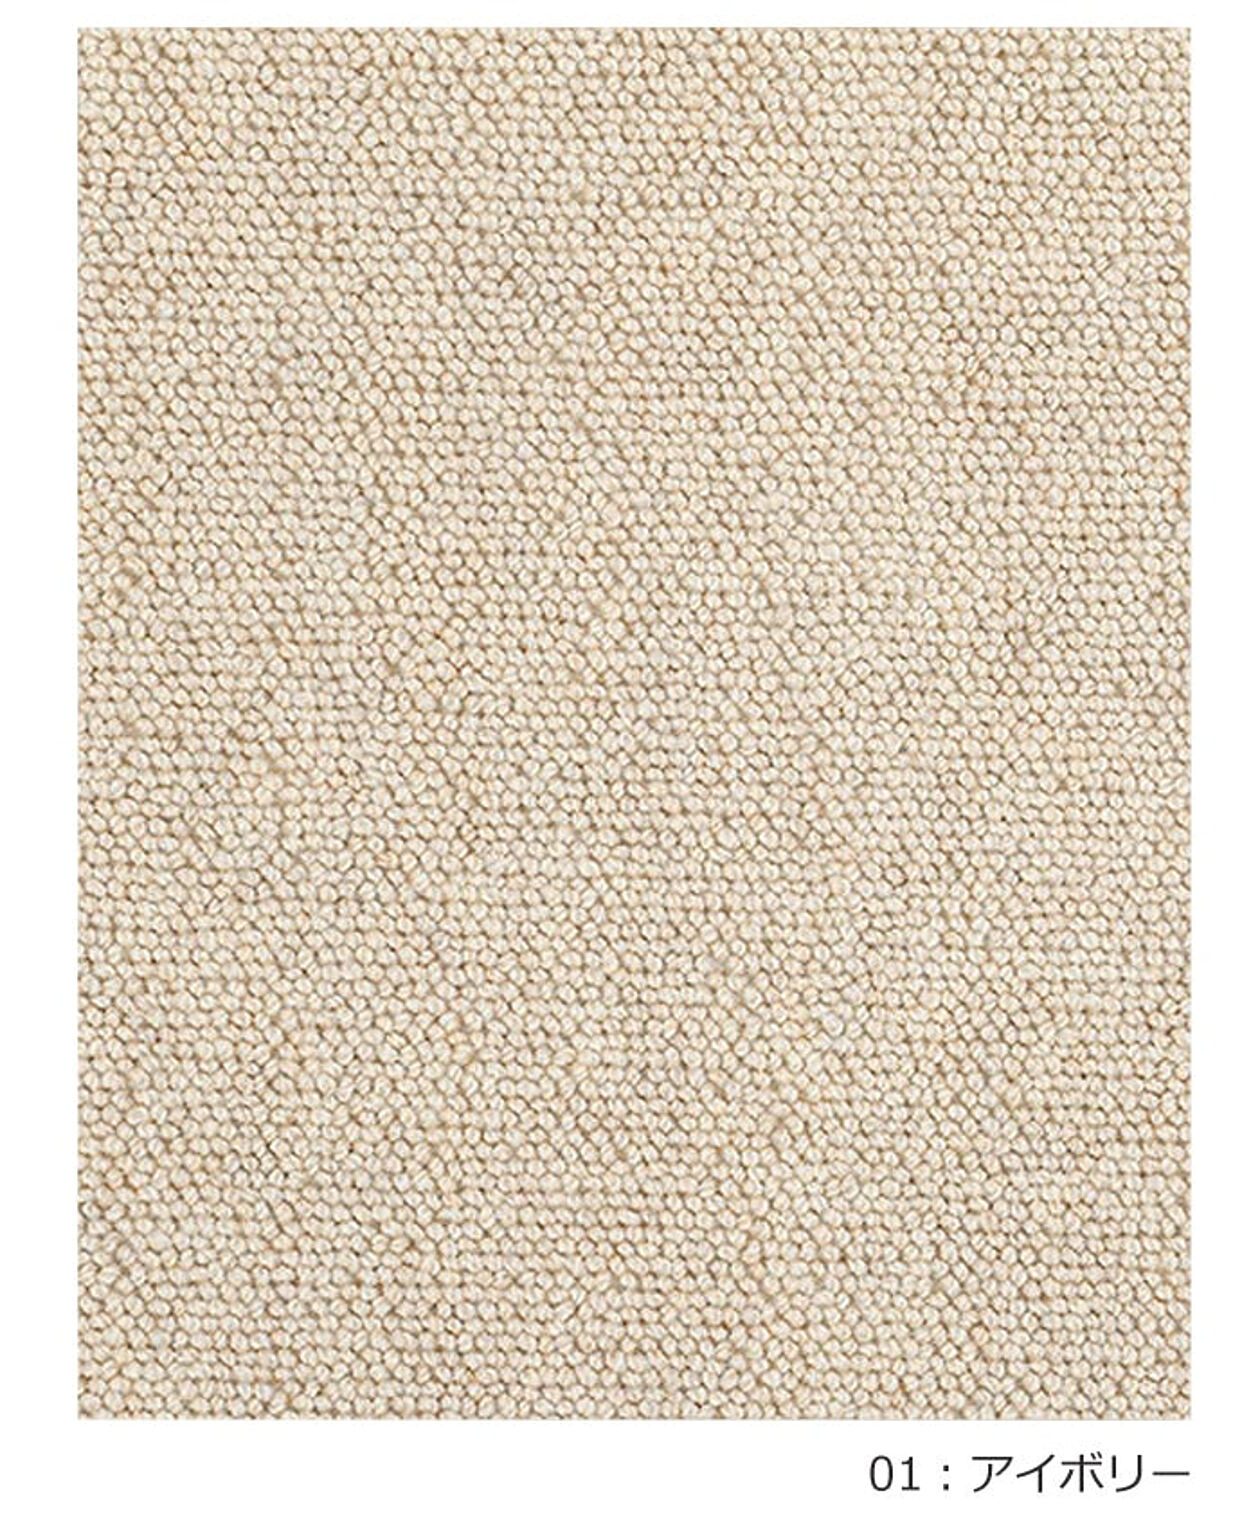 ラグ ラグマット 絨毯 日本製 防炎 防音 ウール100% prevell プレーベル デイル 江戸間6畳 約261×352cm カーペット 無地 北欧 デザイン おしゃれな 引っ越し 新生活